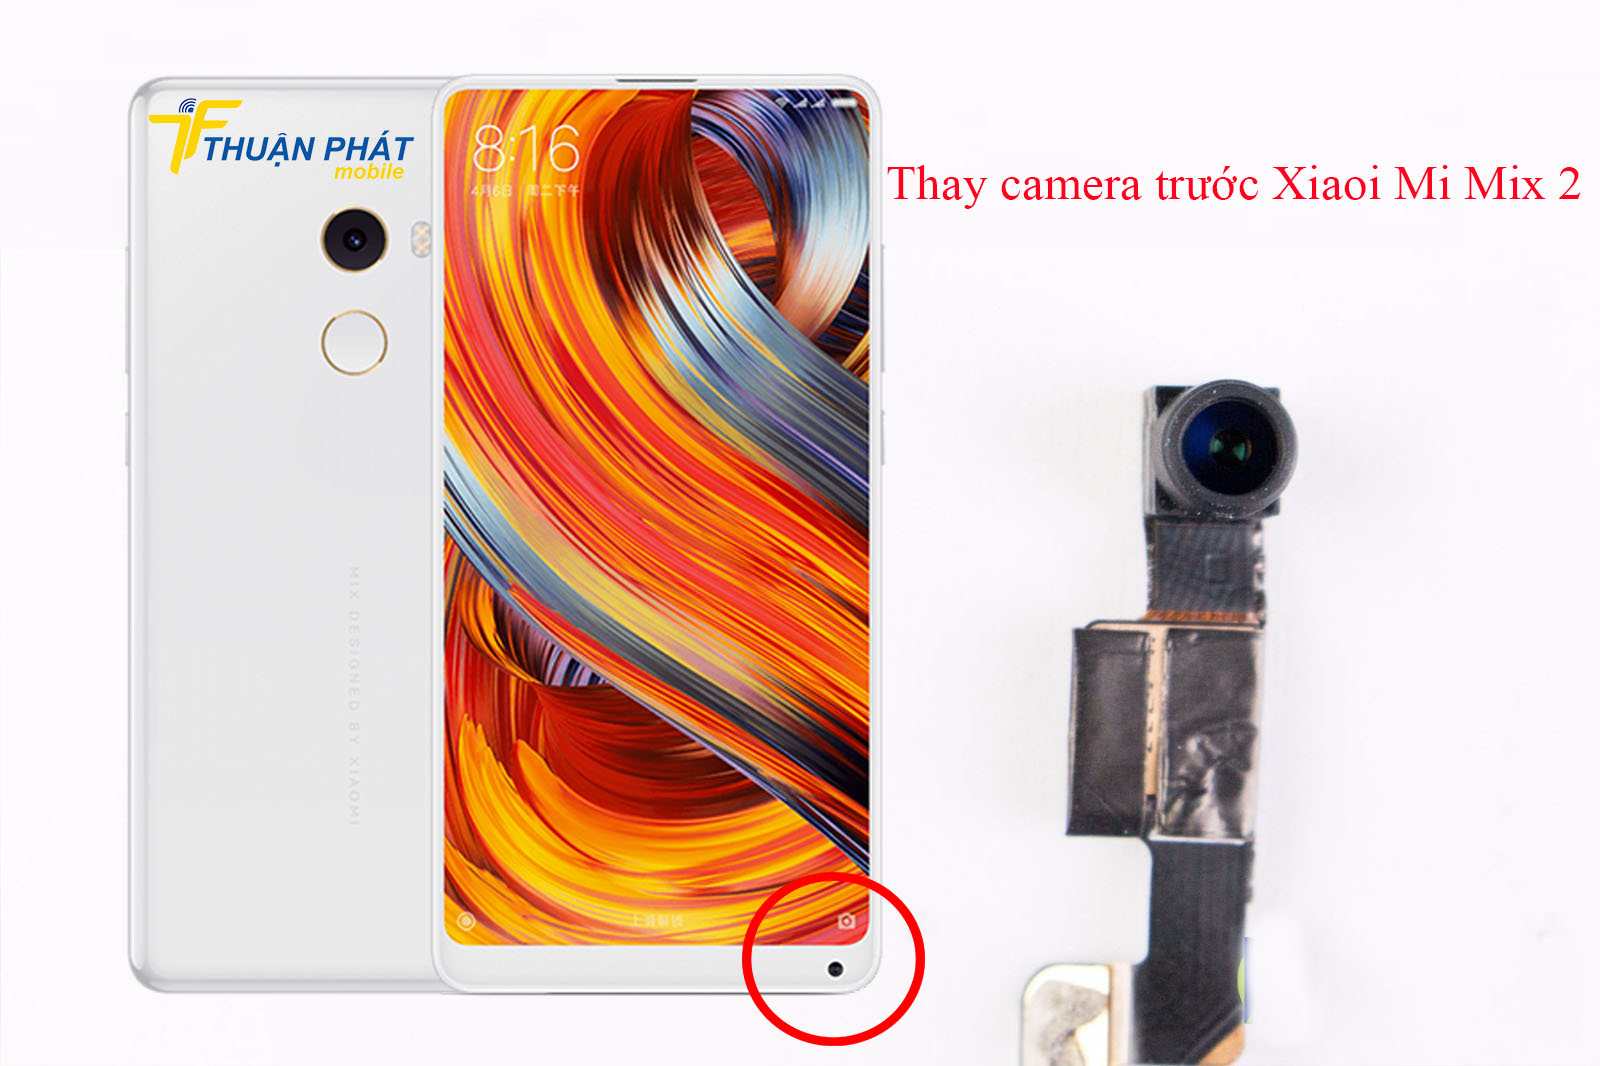 Thay camera trước Xiaomi Mi Mix 2 chính hãng